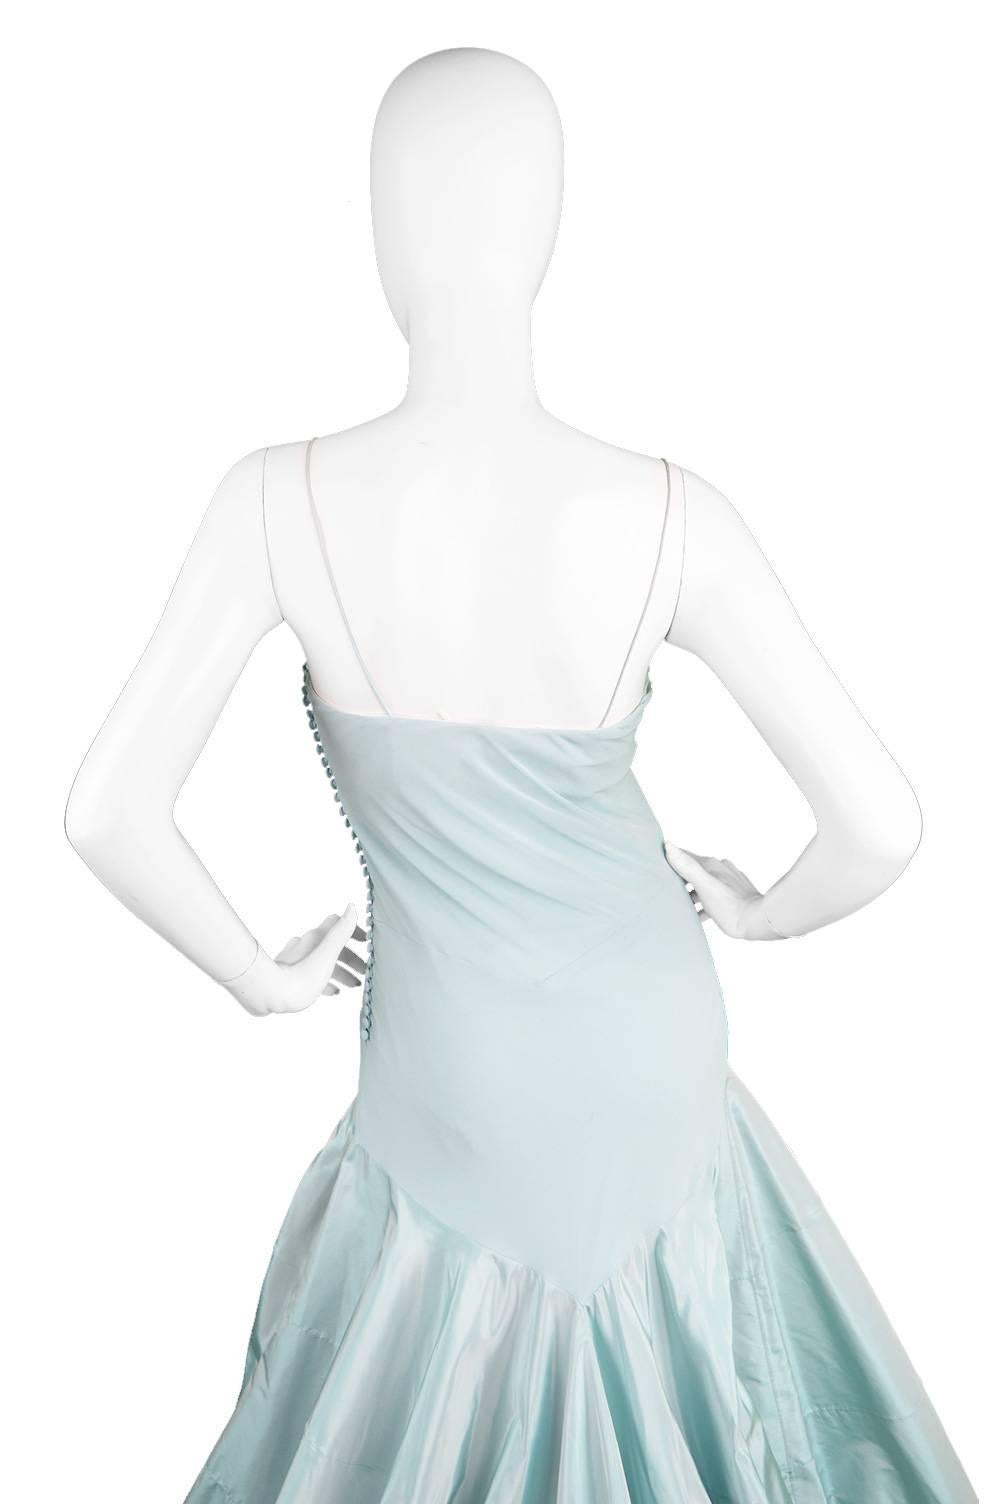 Women's John Galliano for Christian Dior Bias Cut Silk Chiffon Gown with Taffeta Train